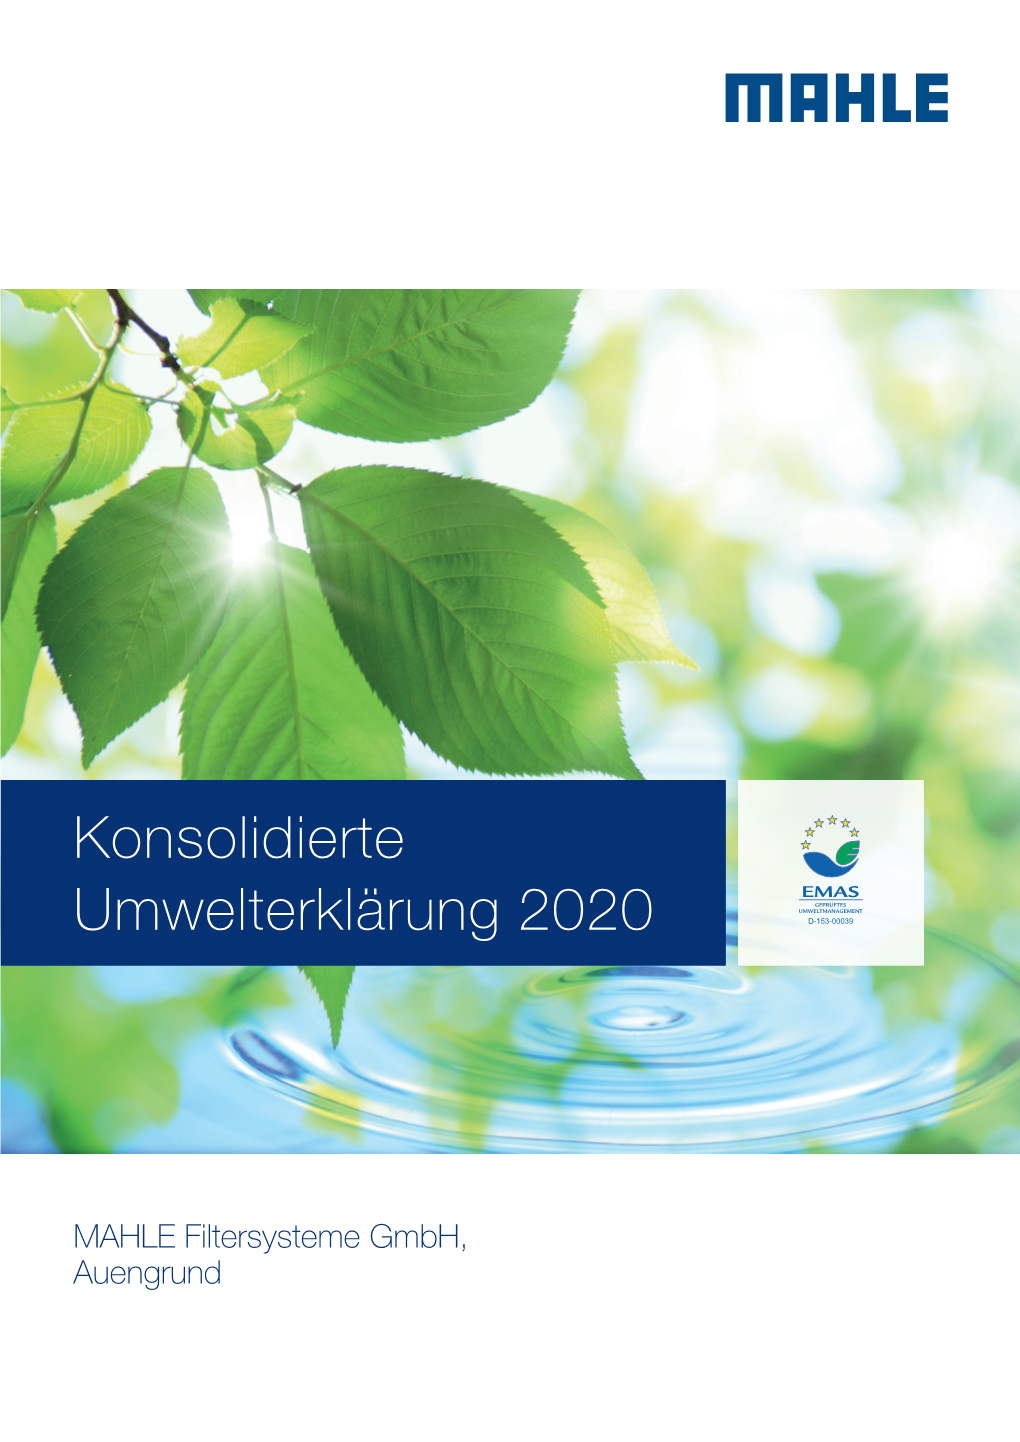 Konsolidierte Umwelt Erklärung 2020